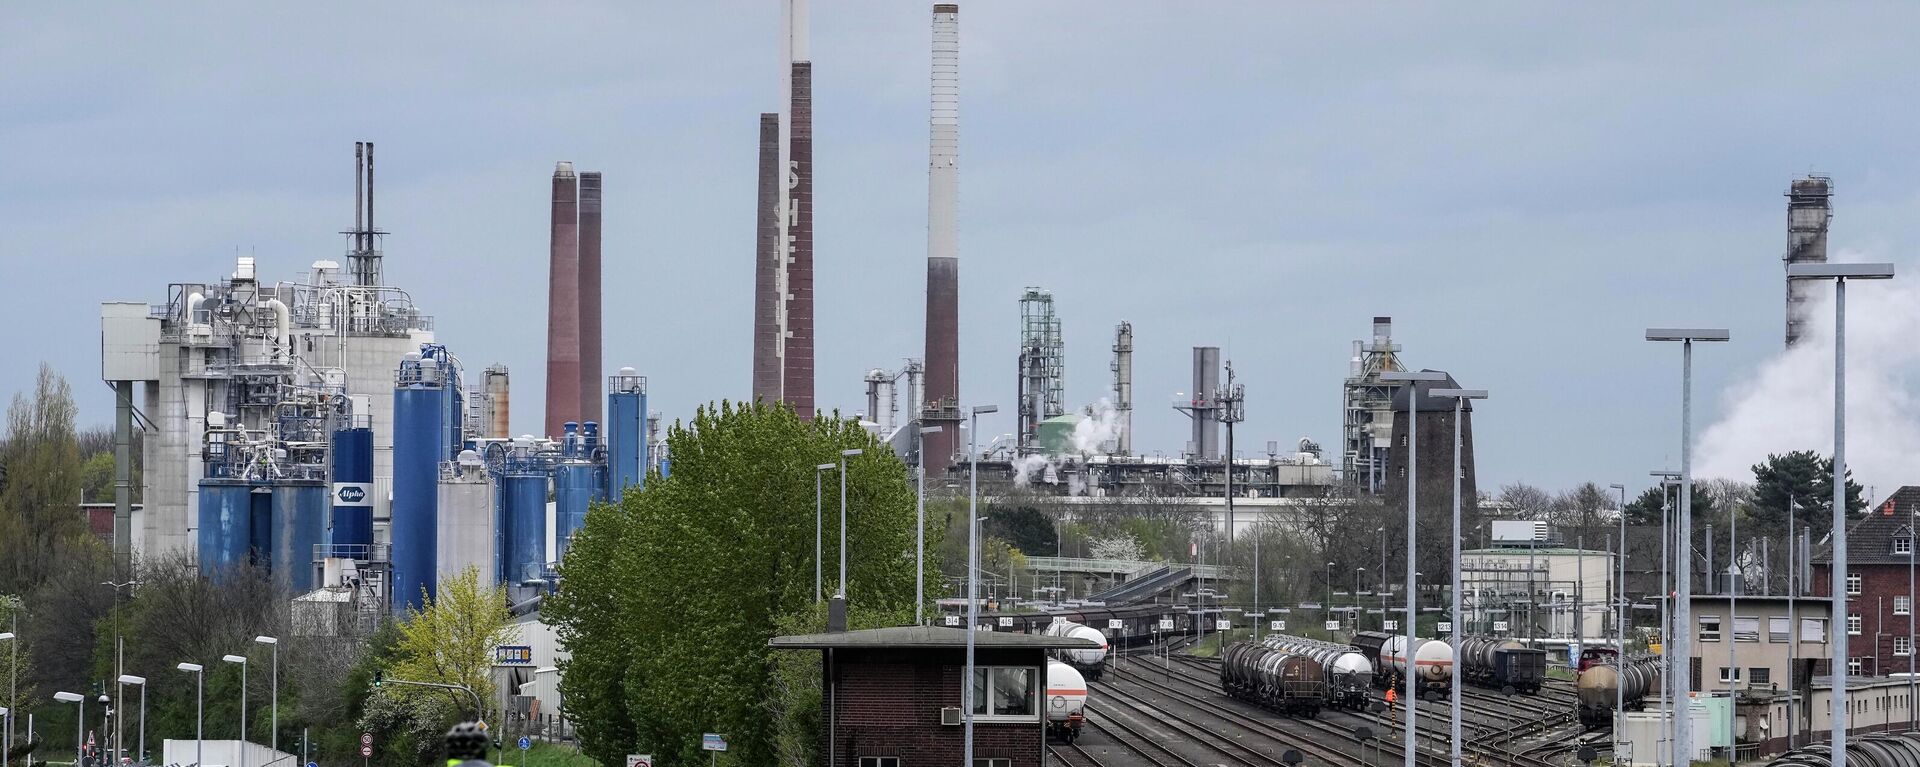 Fábrica química e refinaria de petróleo na cidade de Wesseling, na Alemanha, em 6 de abril de 2022 - Sputnik Brasil, 1920, 09.04.2022